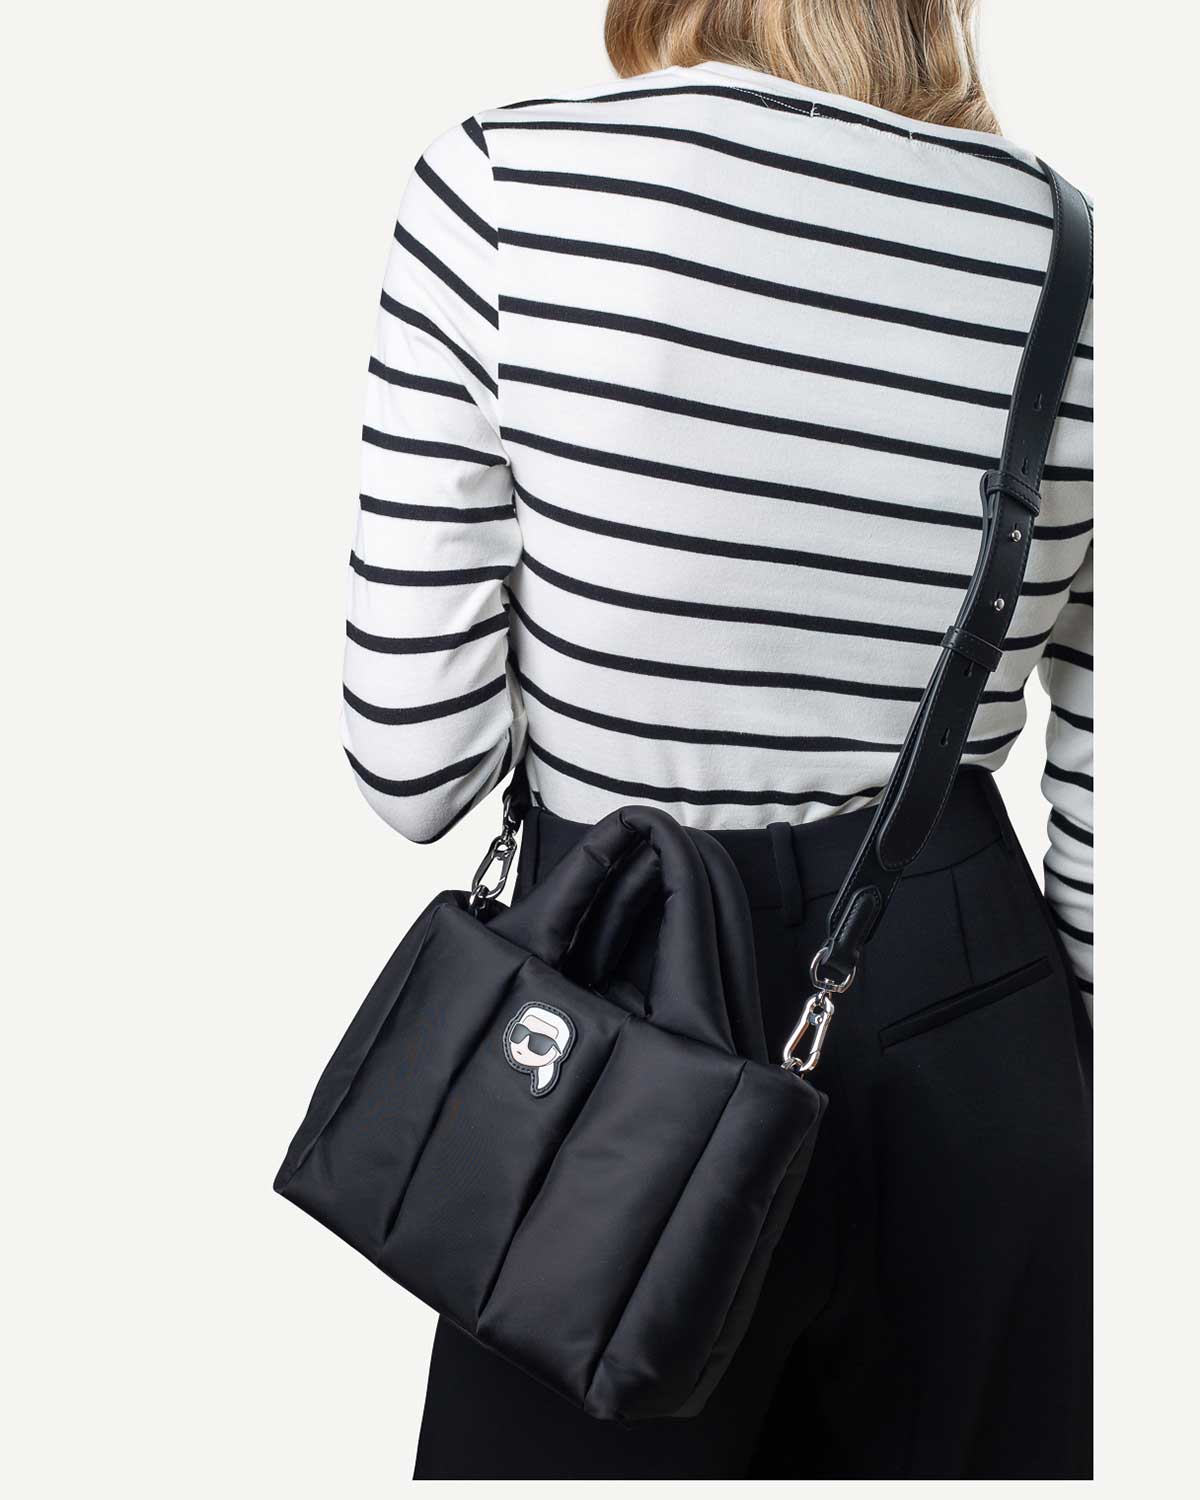 Γυναίκα - Mini Bags - Karl Lagerfeld Μαύρο